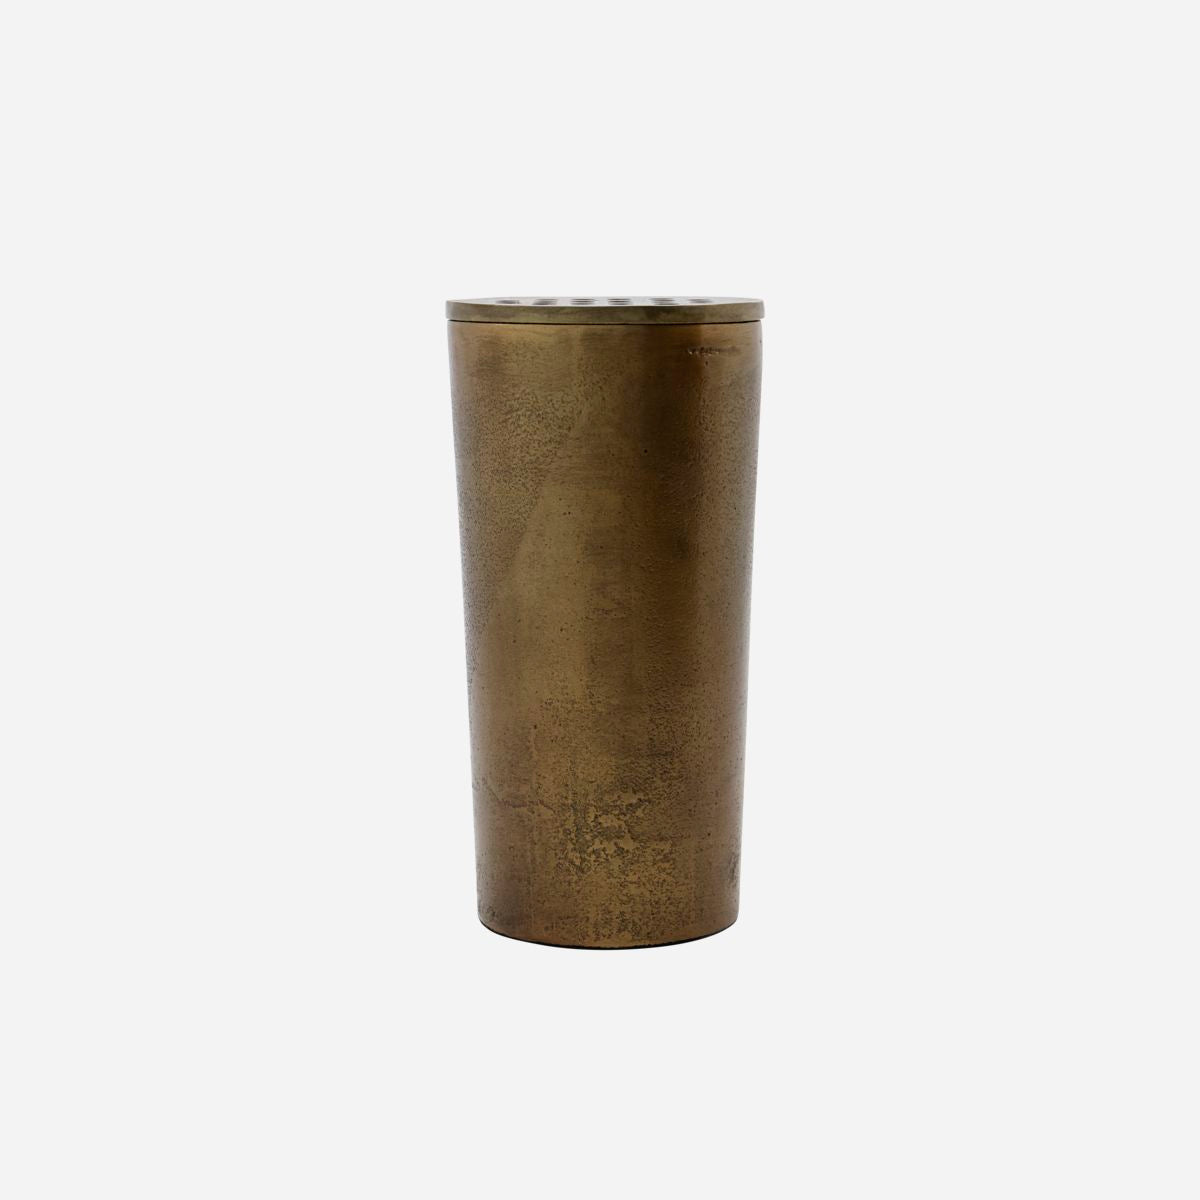 Vaso do Doutor da Casa, Fluxo, Messing H: 18 cm, dia: 9 cm